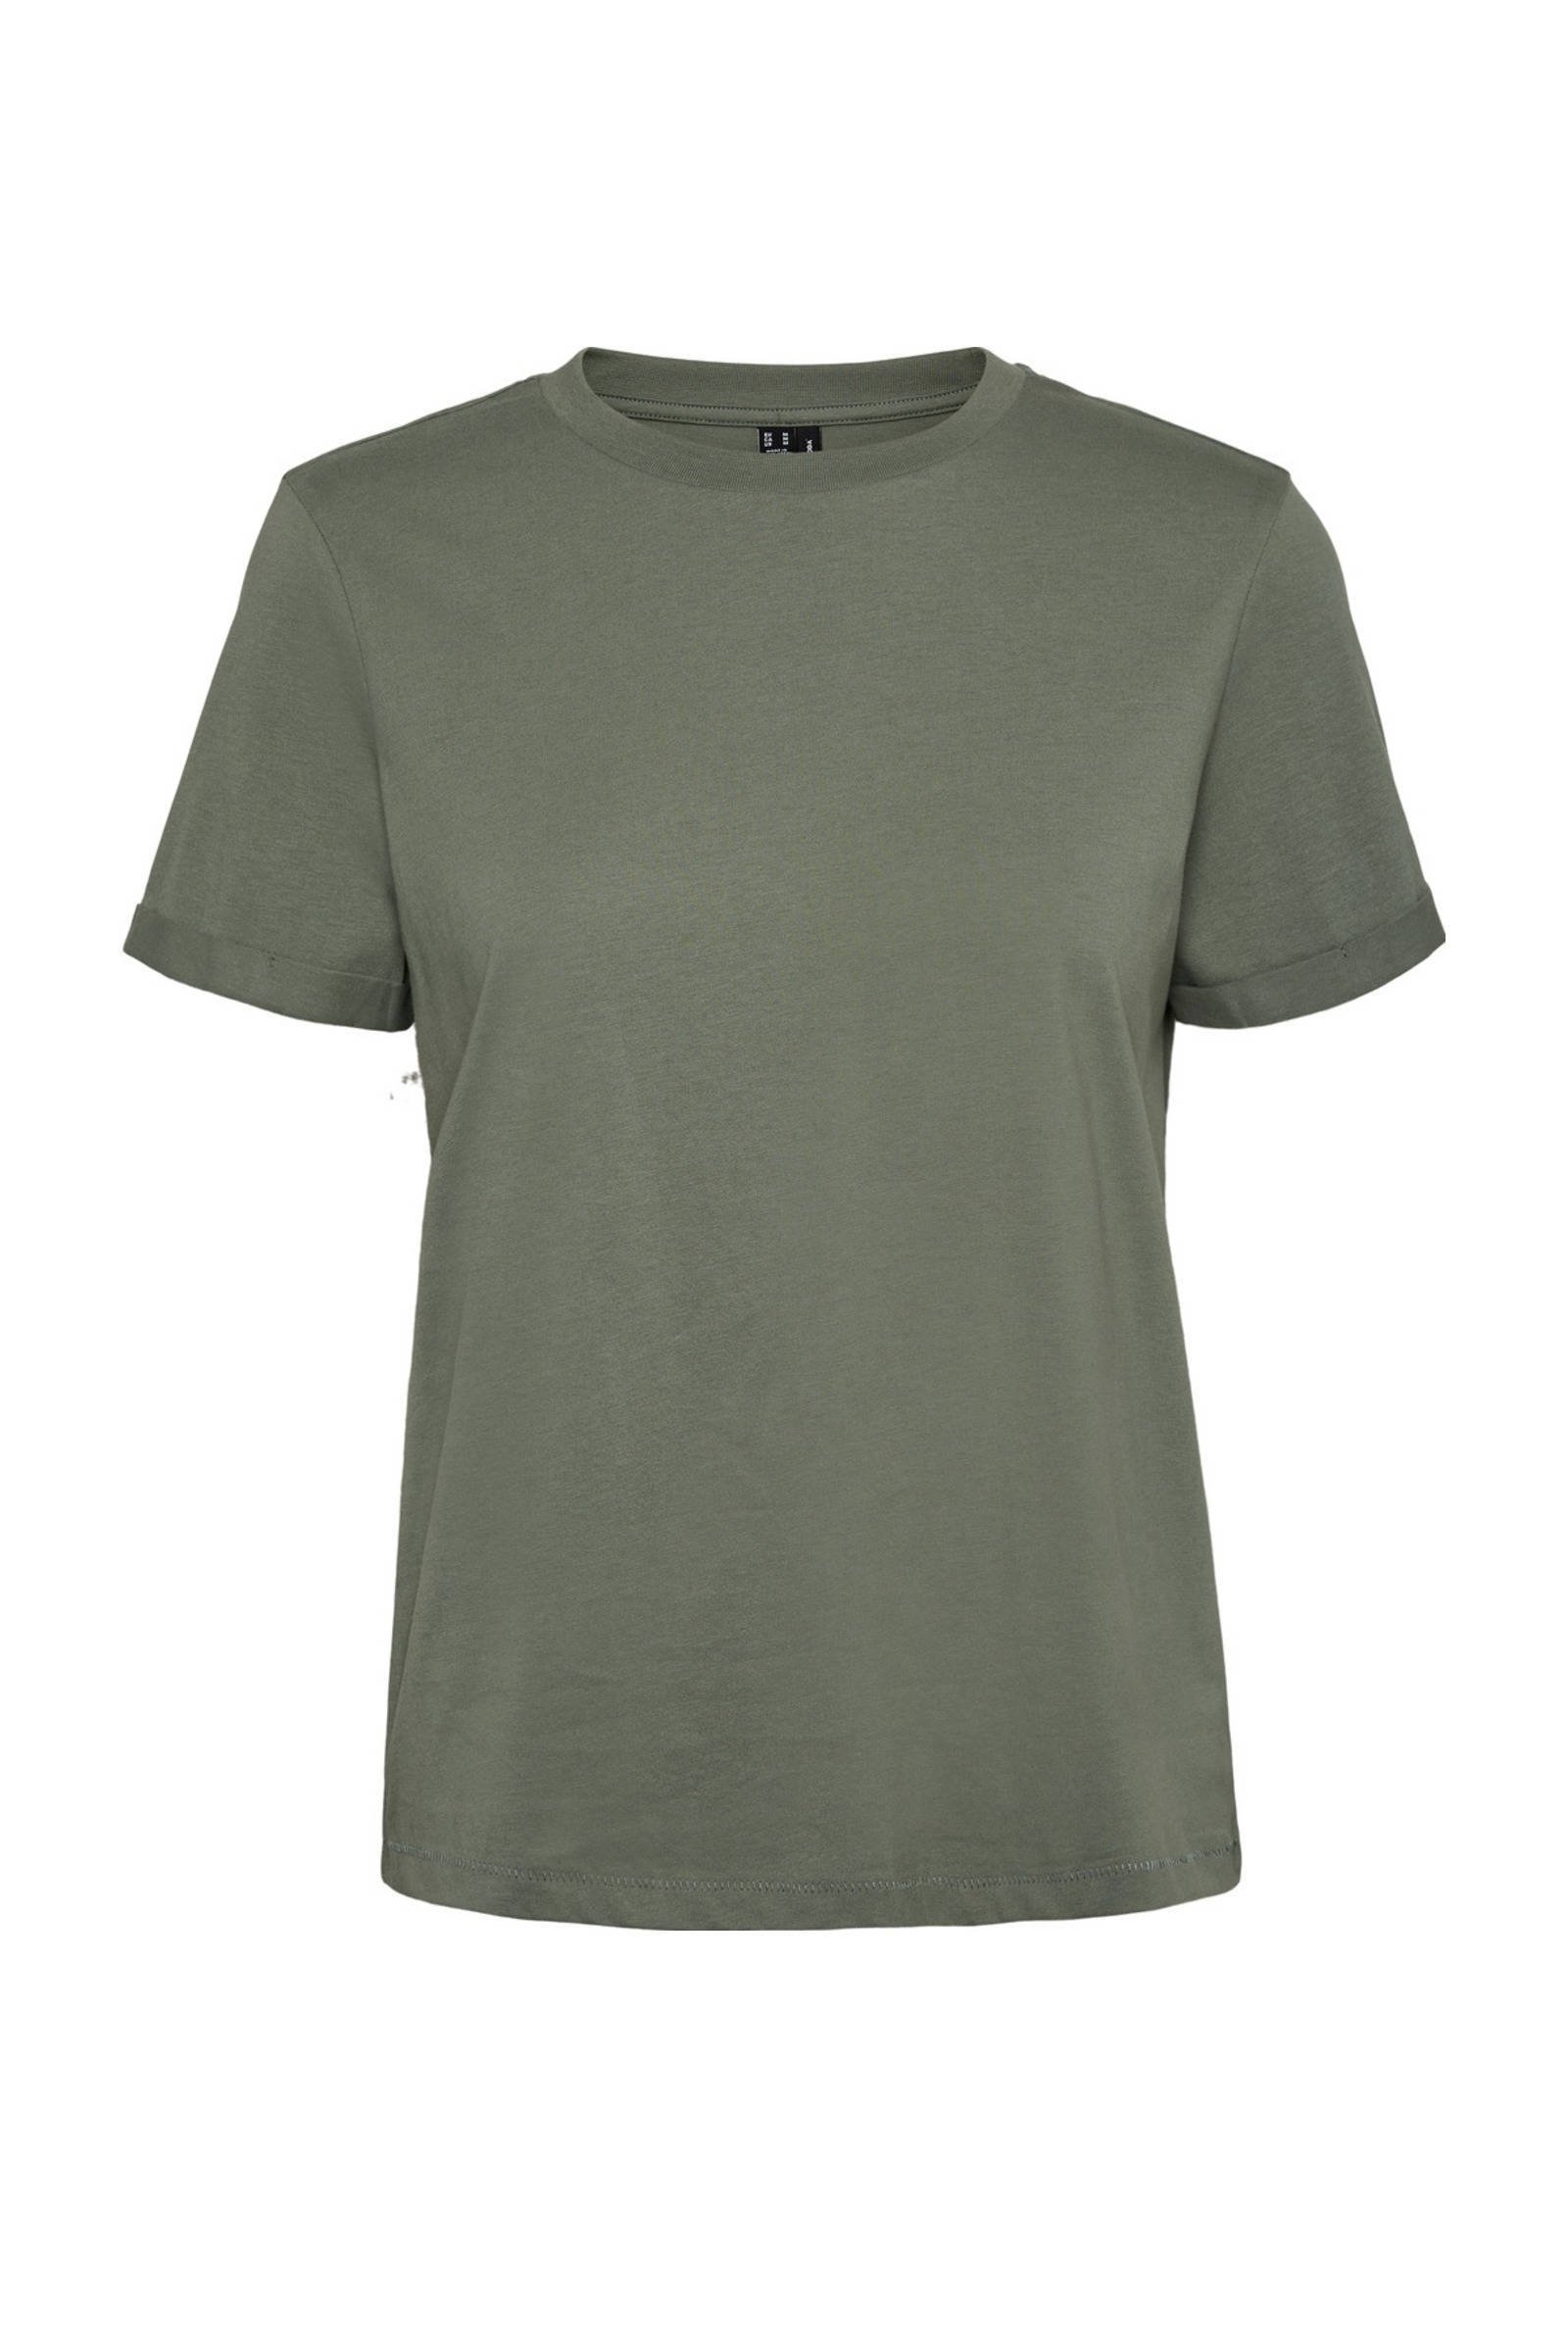 VERO MODA T shirt van biologisch katoen groen online kopen